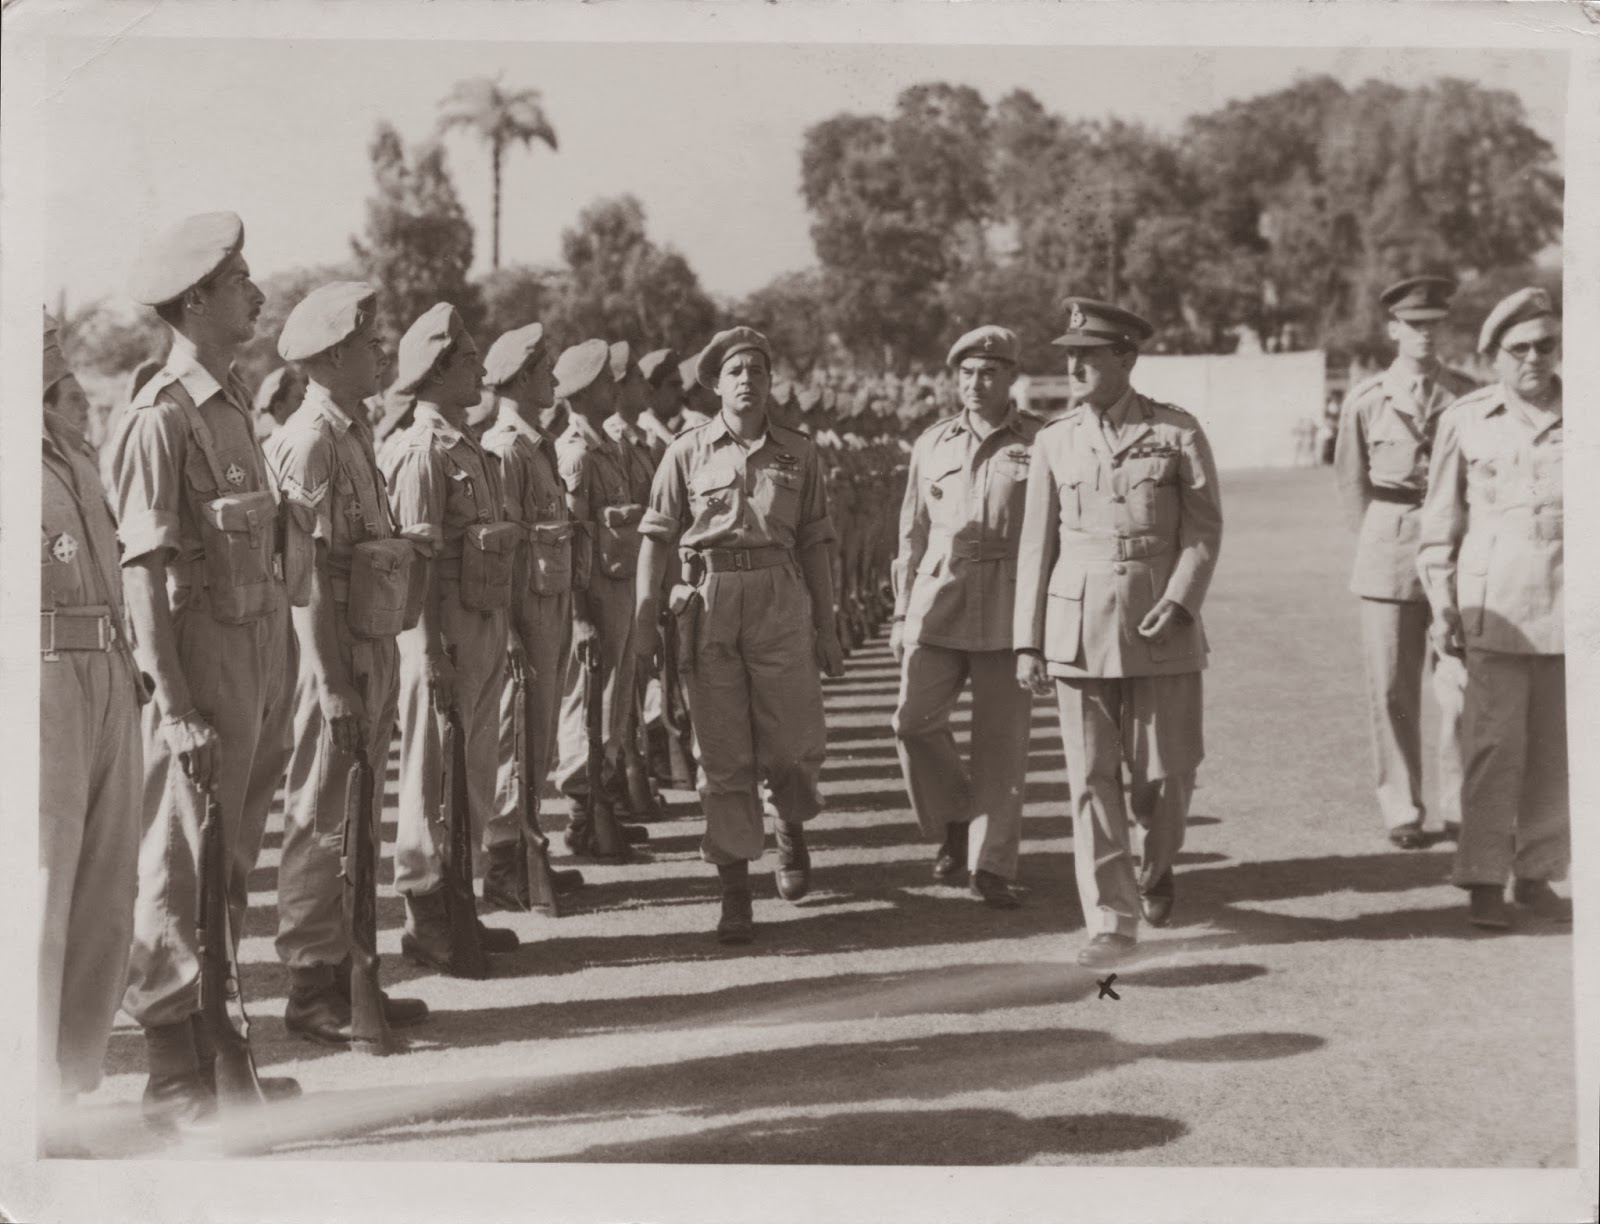 Επιθεώρηση τμήματος του Ιερού Λόχου από τον διοικητή των συμμαχικών δυνάμεων Μέσης Ανατολής κατά την τελετή αποχώρησης της μονάδας από την Μέση Ανατολή, με τη λήξη των επιχειρήσεων. Δεξιά στη φωτογραφία ο διοικητής του Ιερού Λόχου, Σχης Χρ. Τσιγάντες